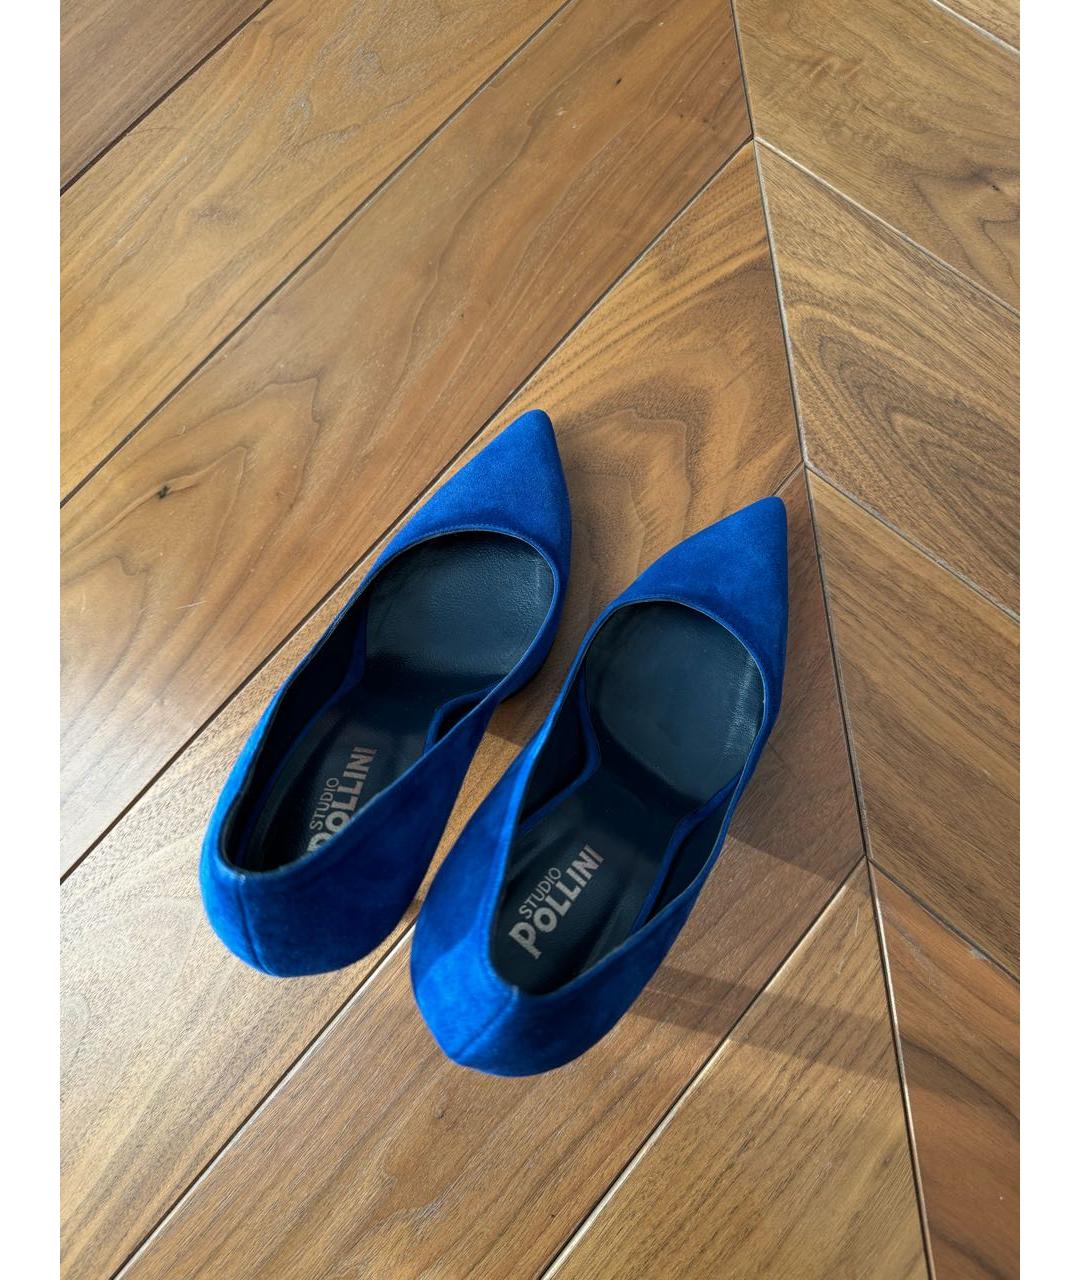 POLLINI Синие замшевые туфли, фото 3